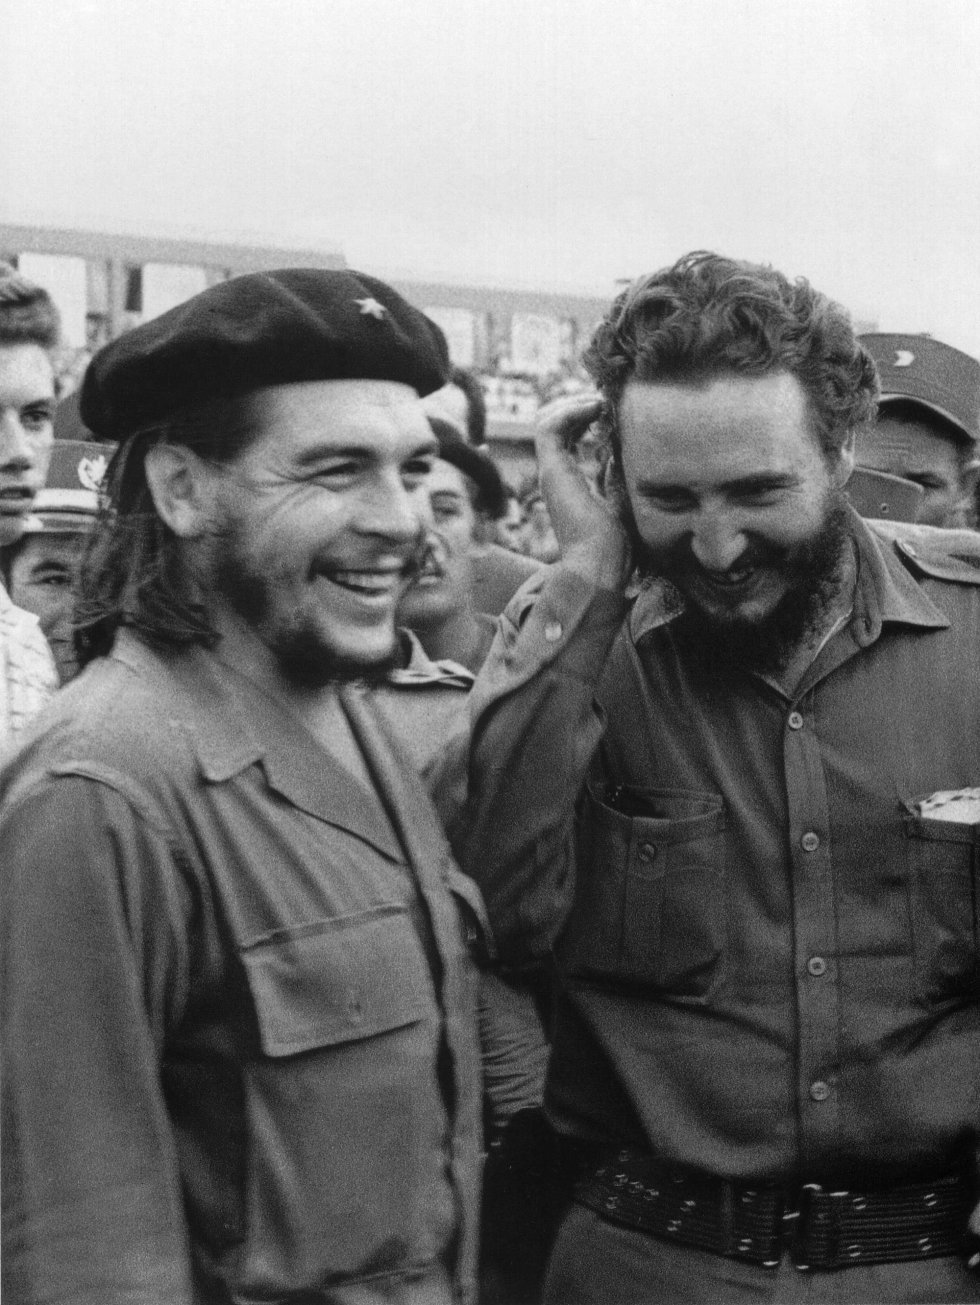 Castro con el guerrillero argentino Ernesto "Che" Guevara en 1960, un año después del triunfo de la Revolución.